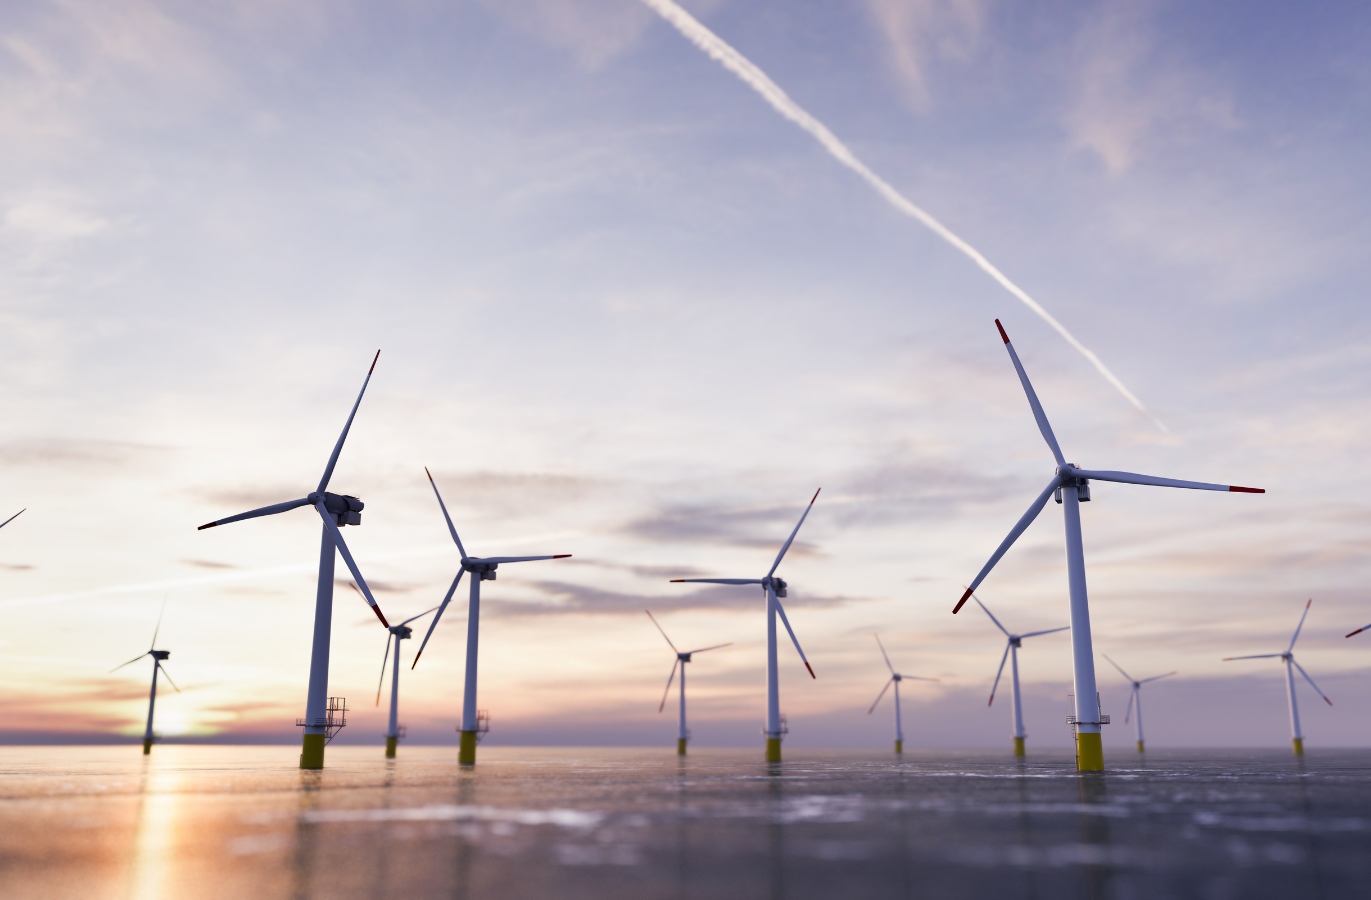 フショア風力発電の推進と気候変動への取り組み | TREND WORDAI